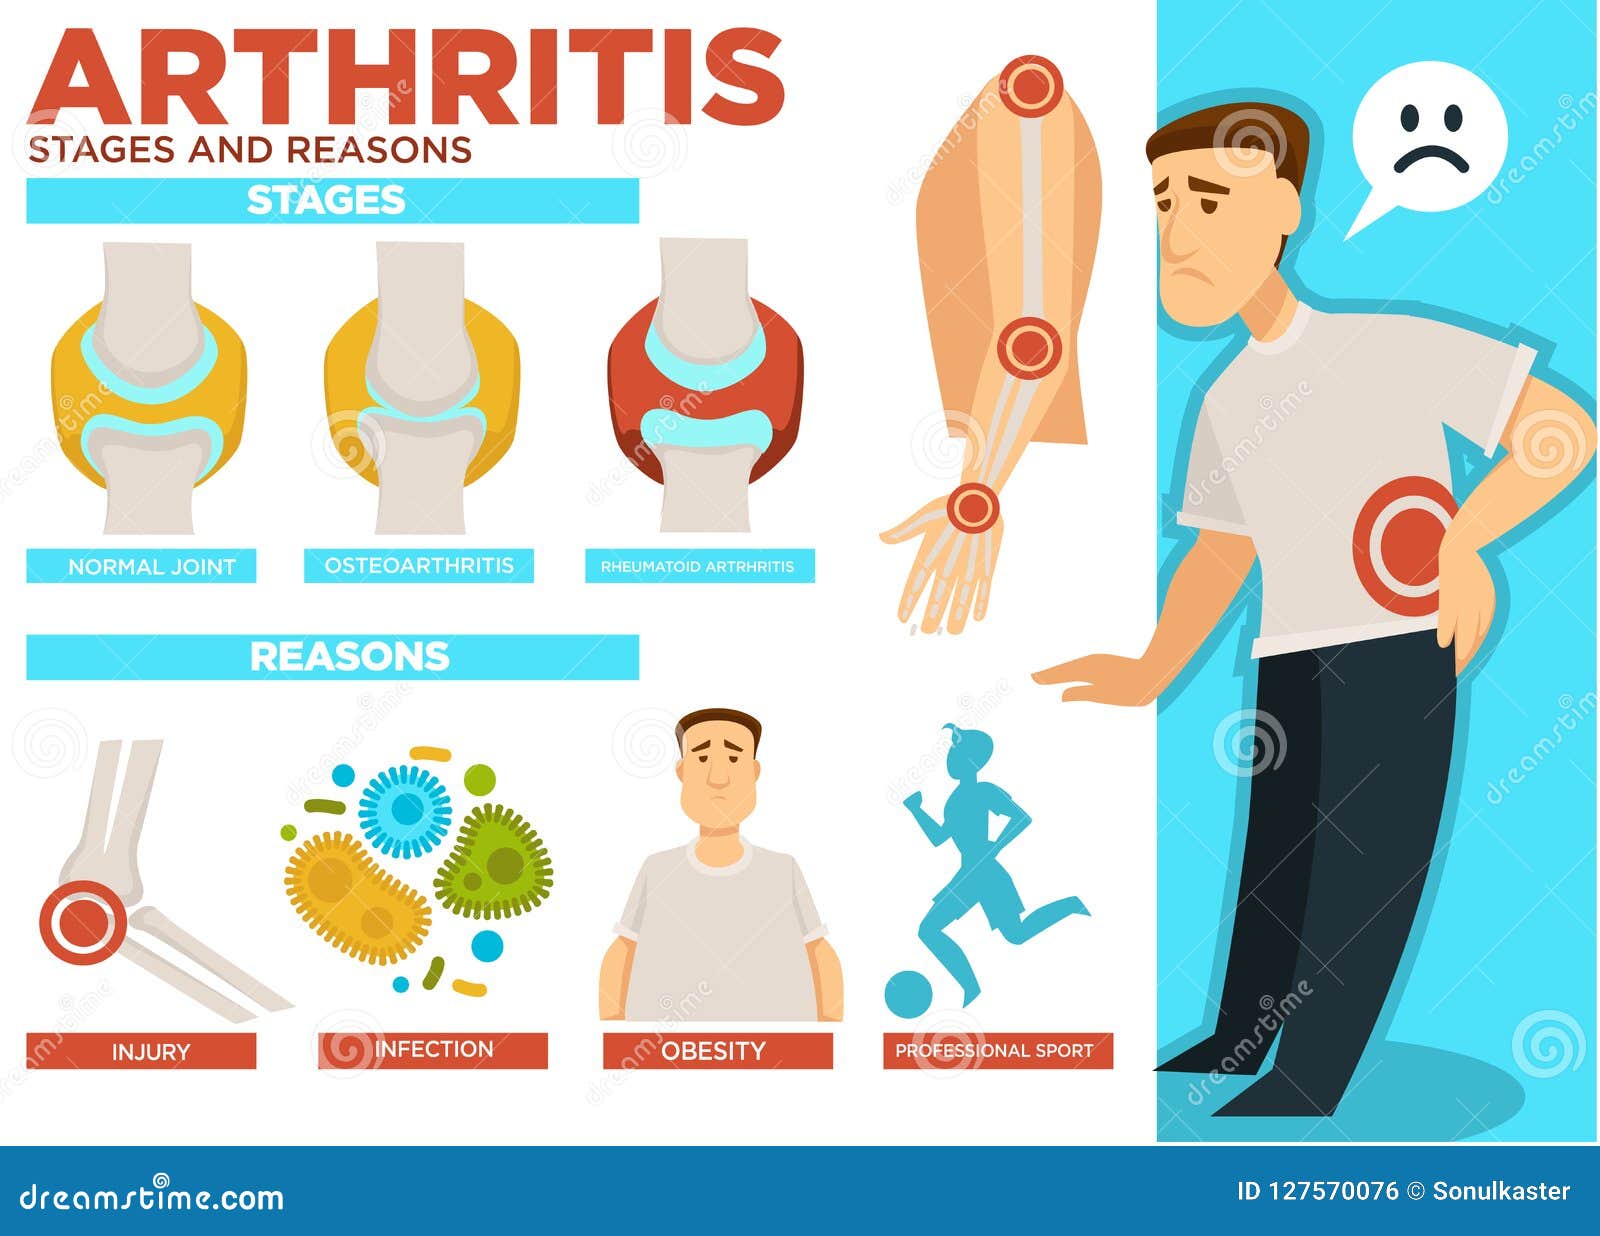 rheumatoid arthritis stages of disease